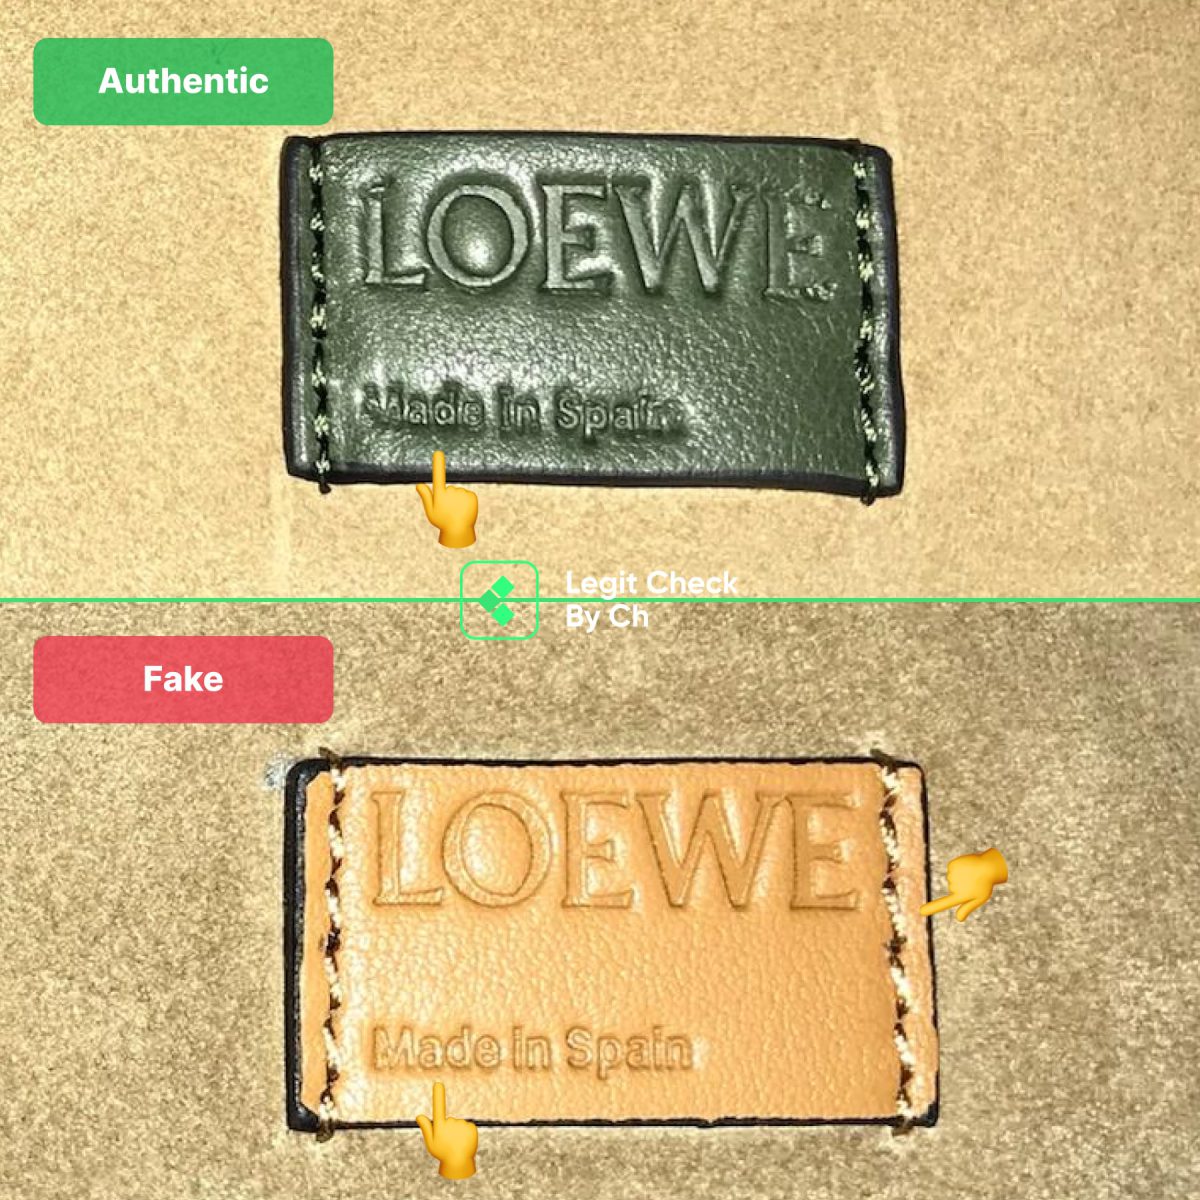 Loewe Bag Fake Vs Real Label